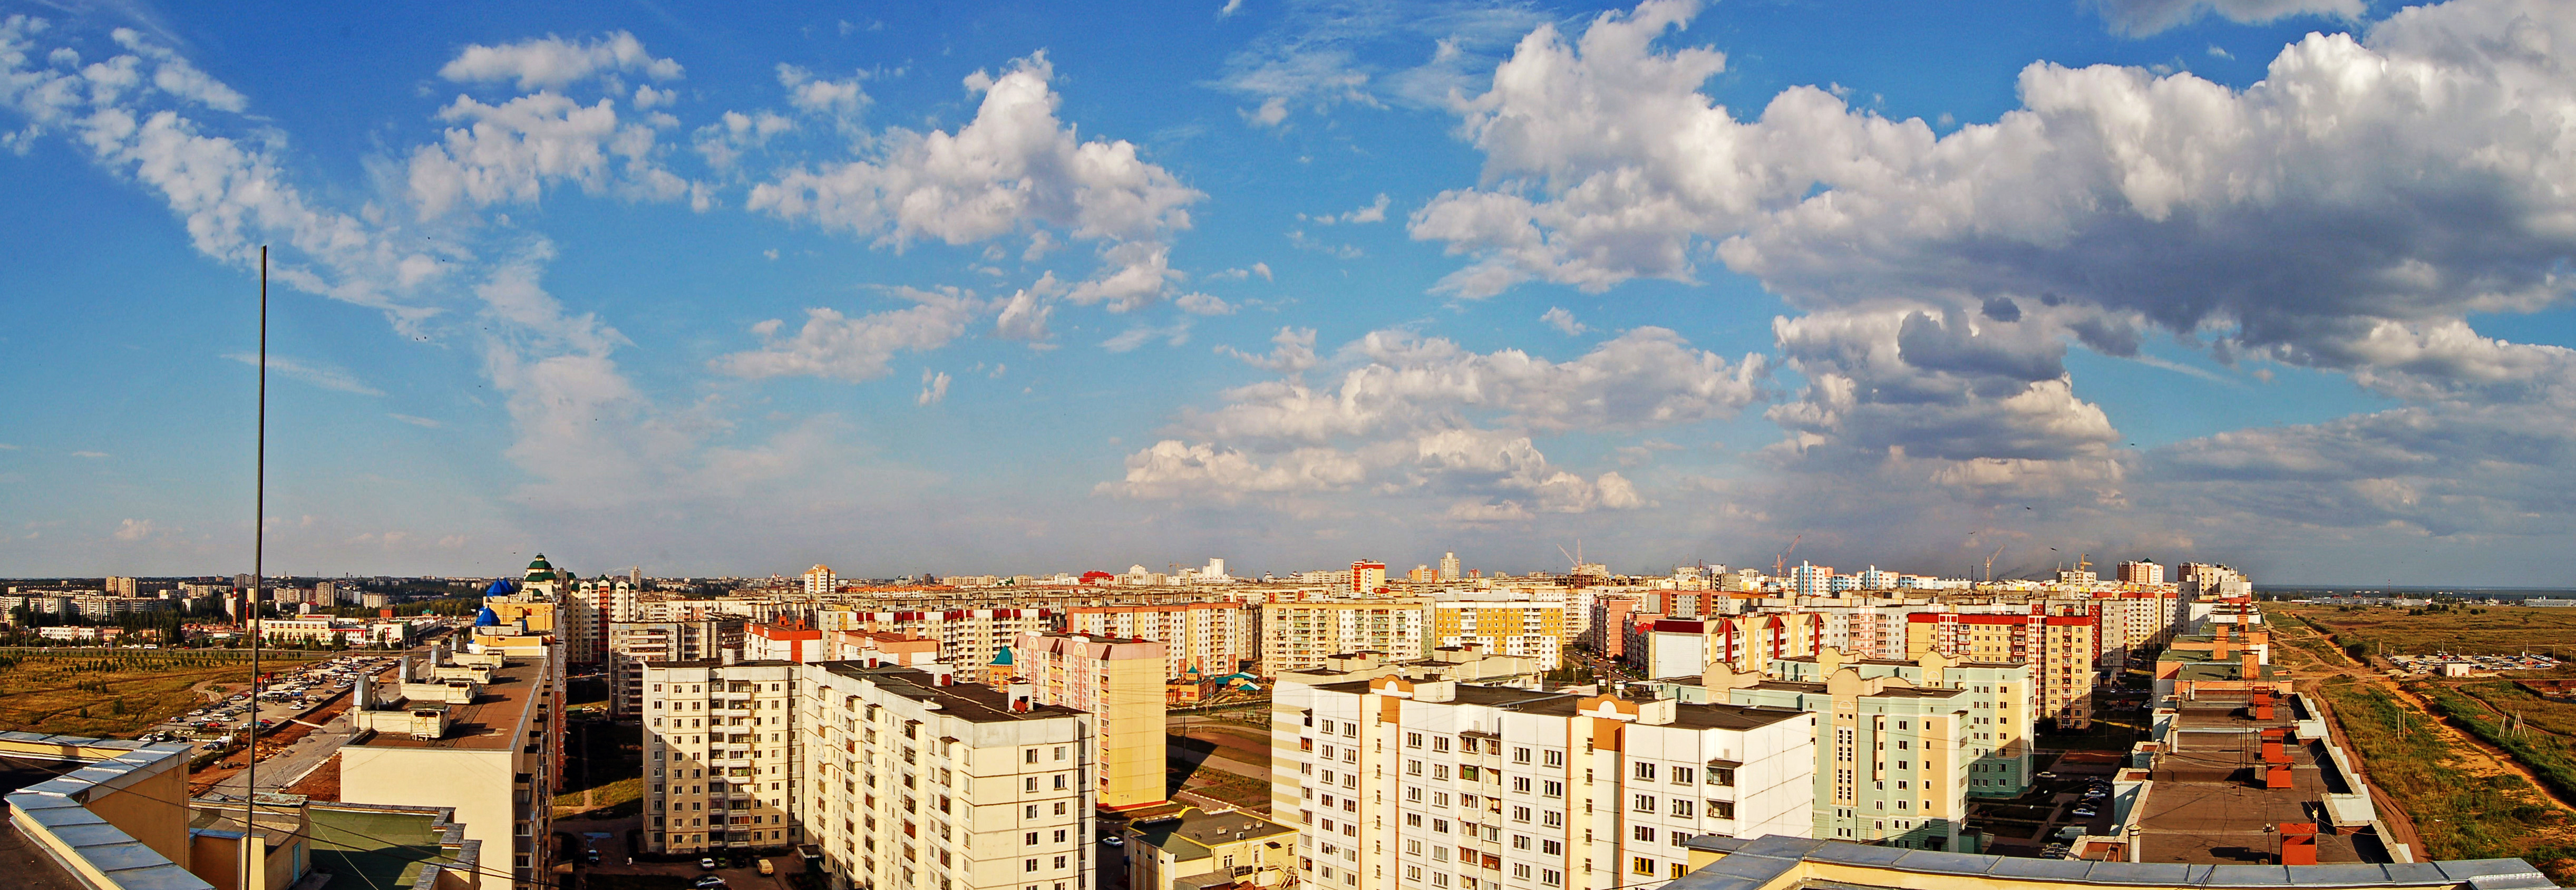 Липецк панорама города